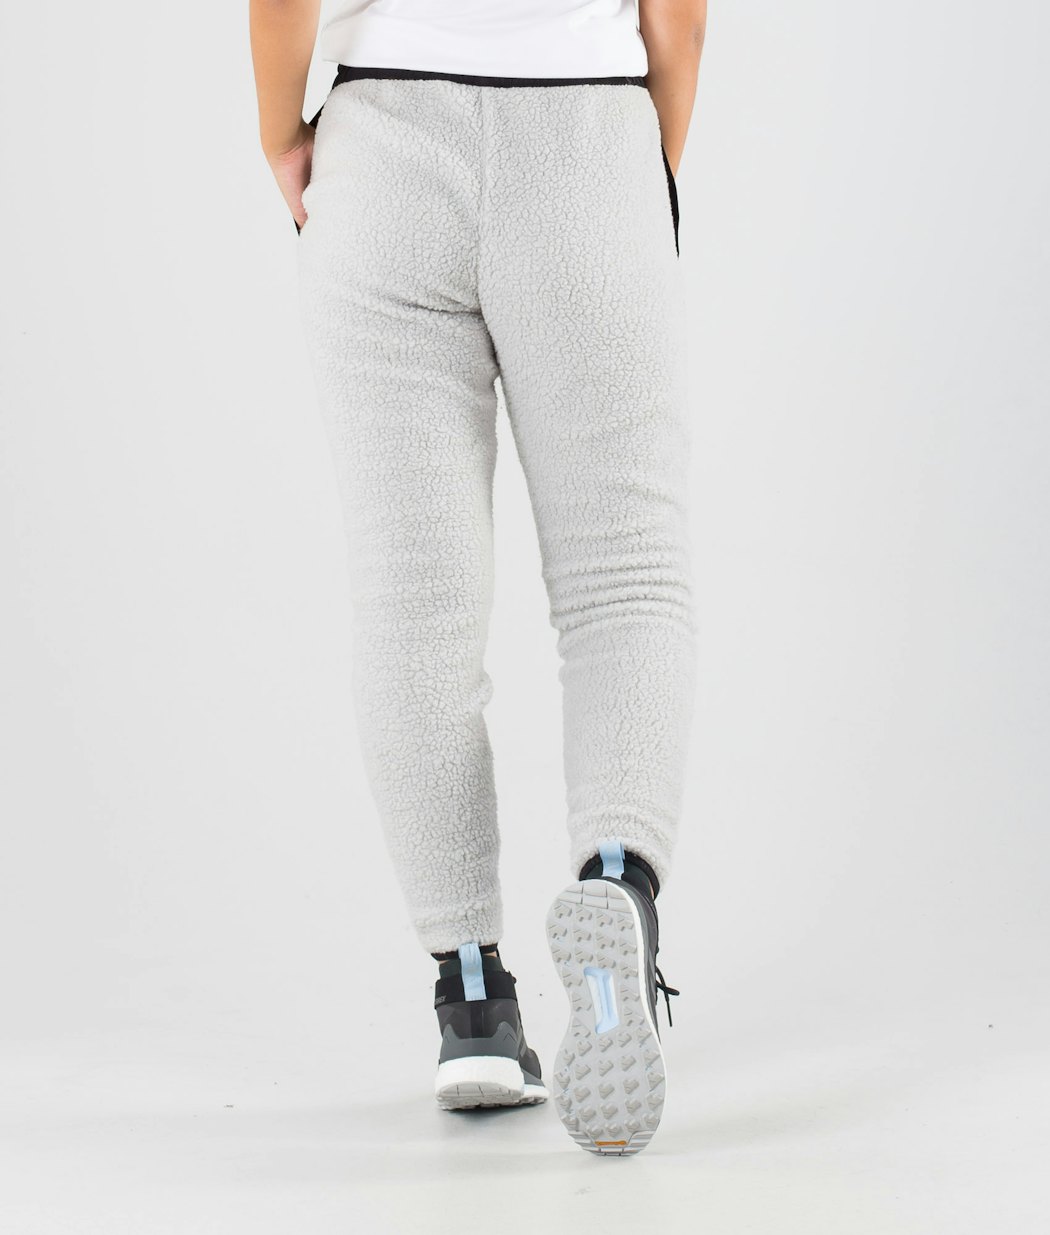 Dope Ollie W Women's Fleece Pants Black/Light Grey